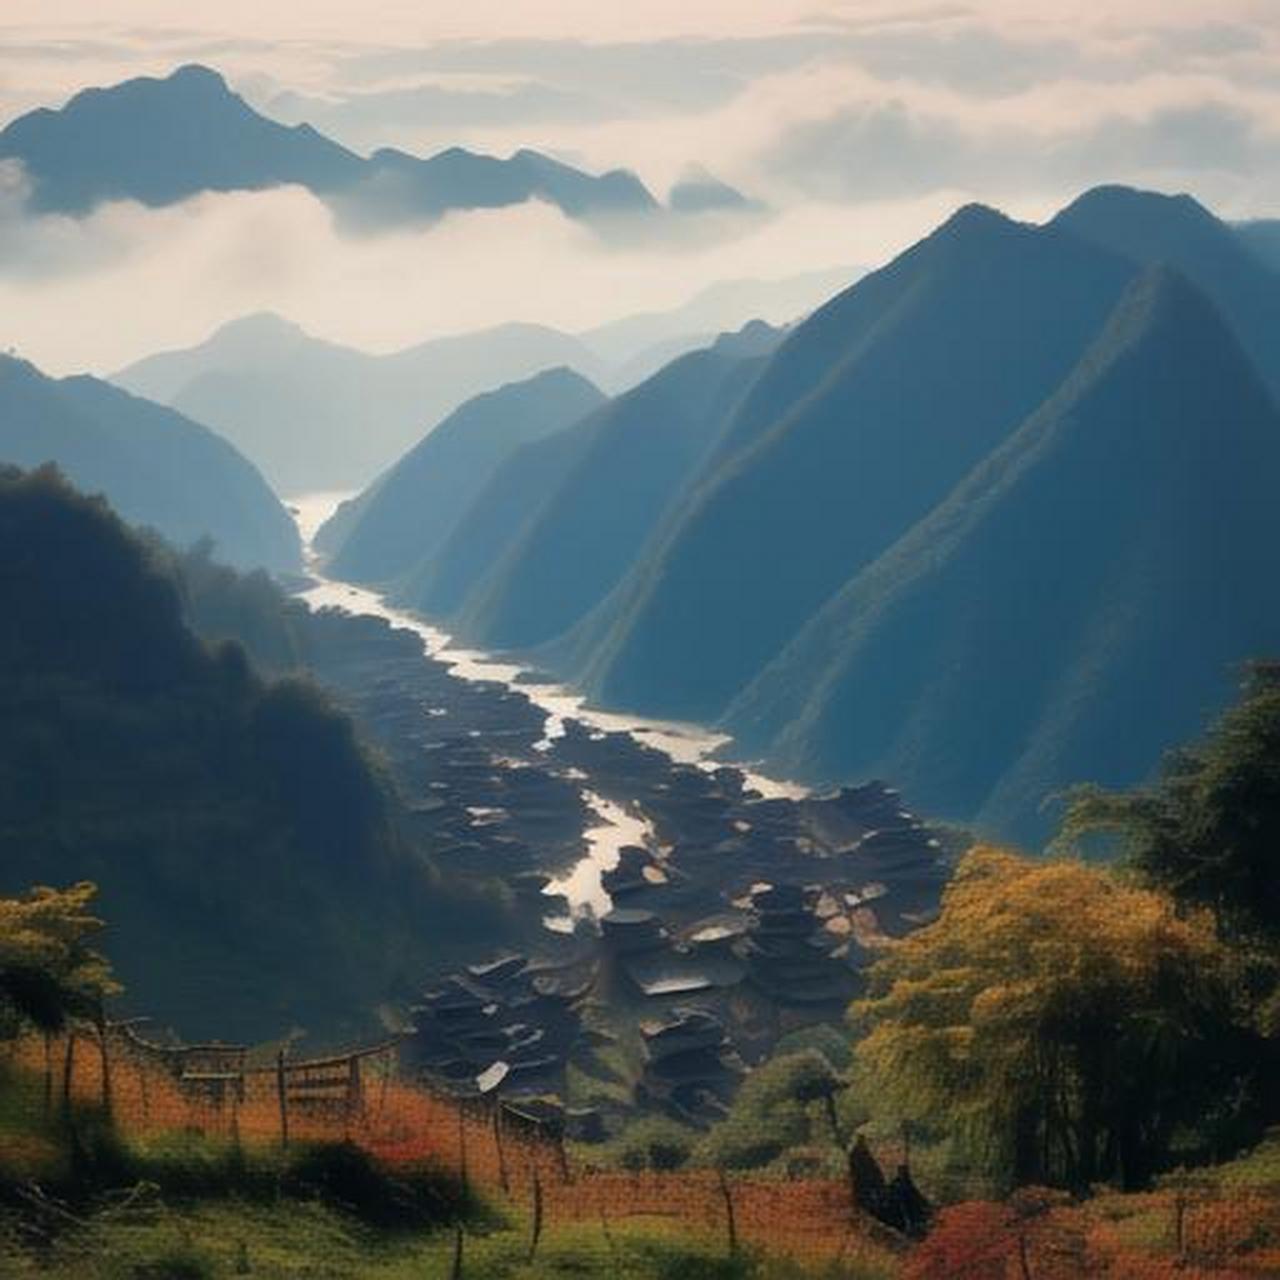 在中国西南的四川省,有一片神秘而美丽的土地——大凉山